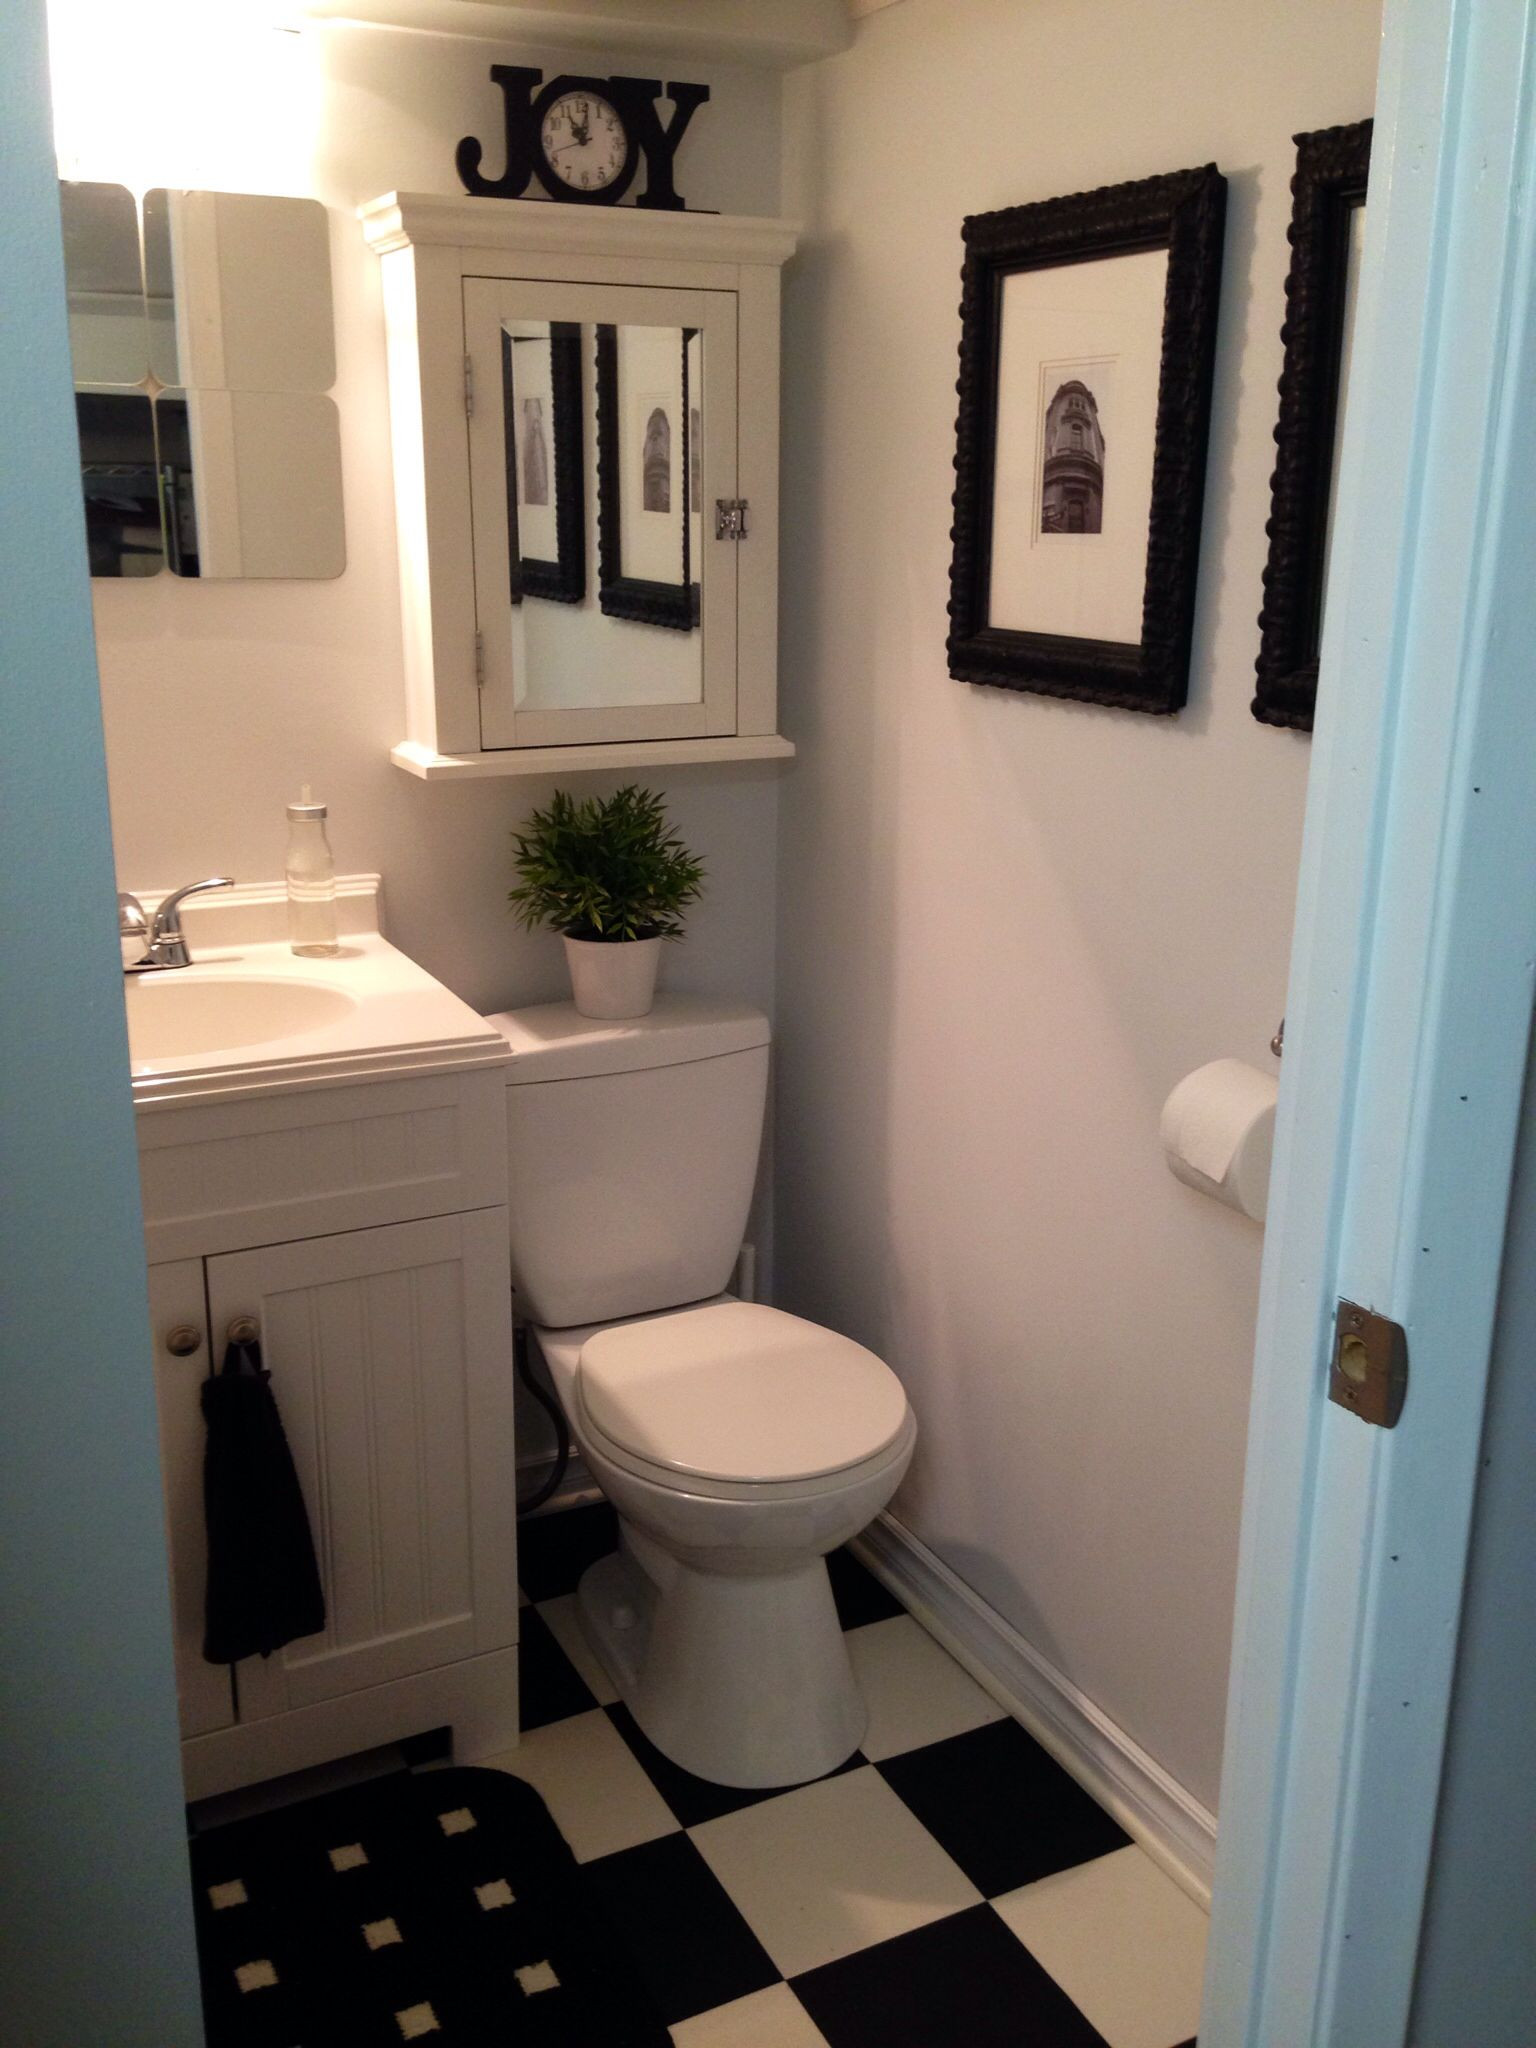 Bathroom Decor Ideas Pinterest
 ALL NEW SMALL BATHROOM IDEAS PINTEREST